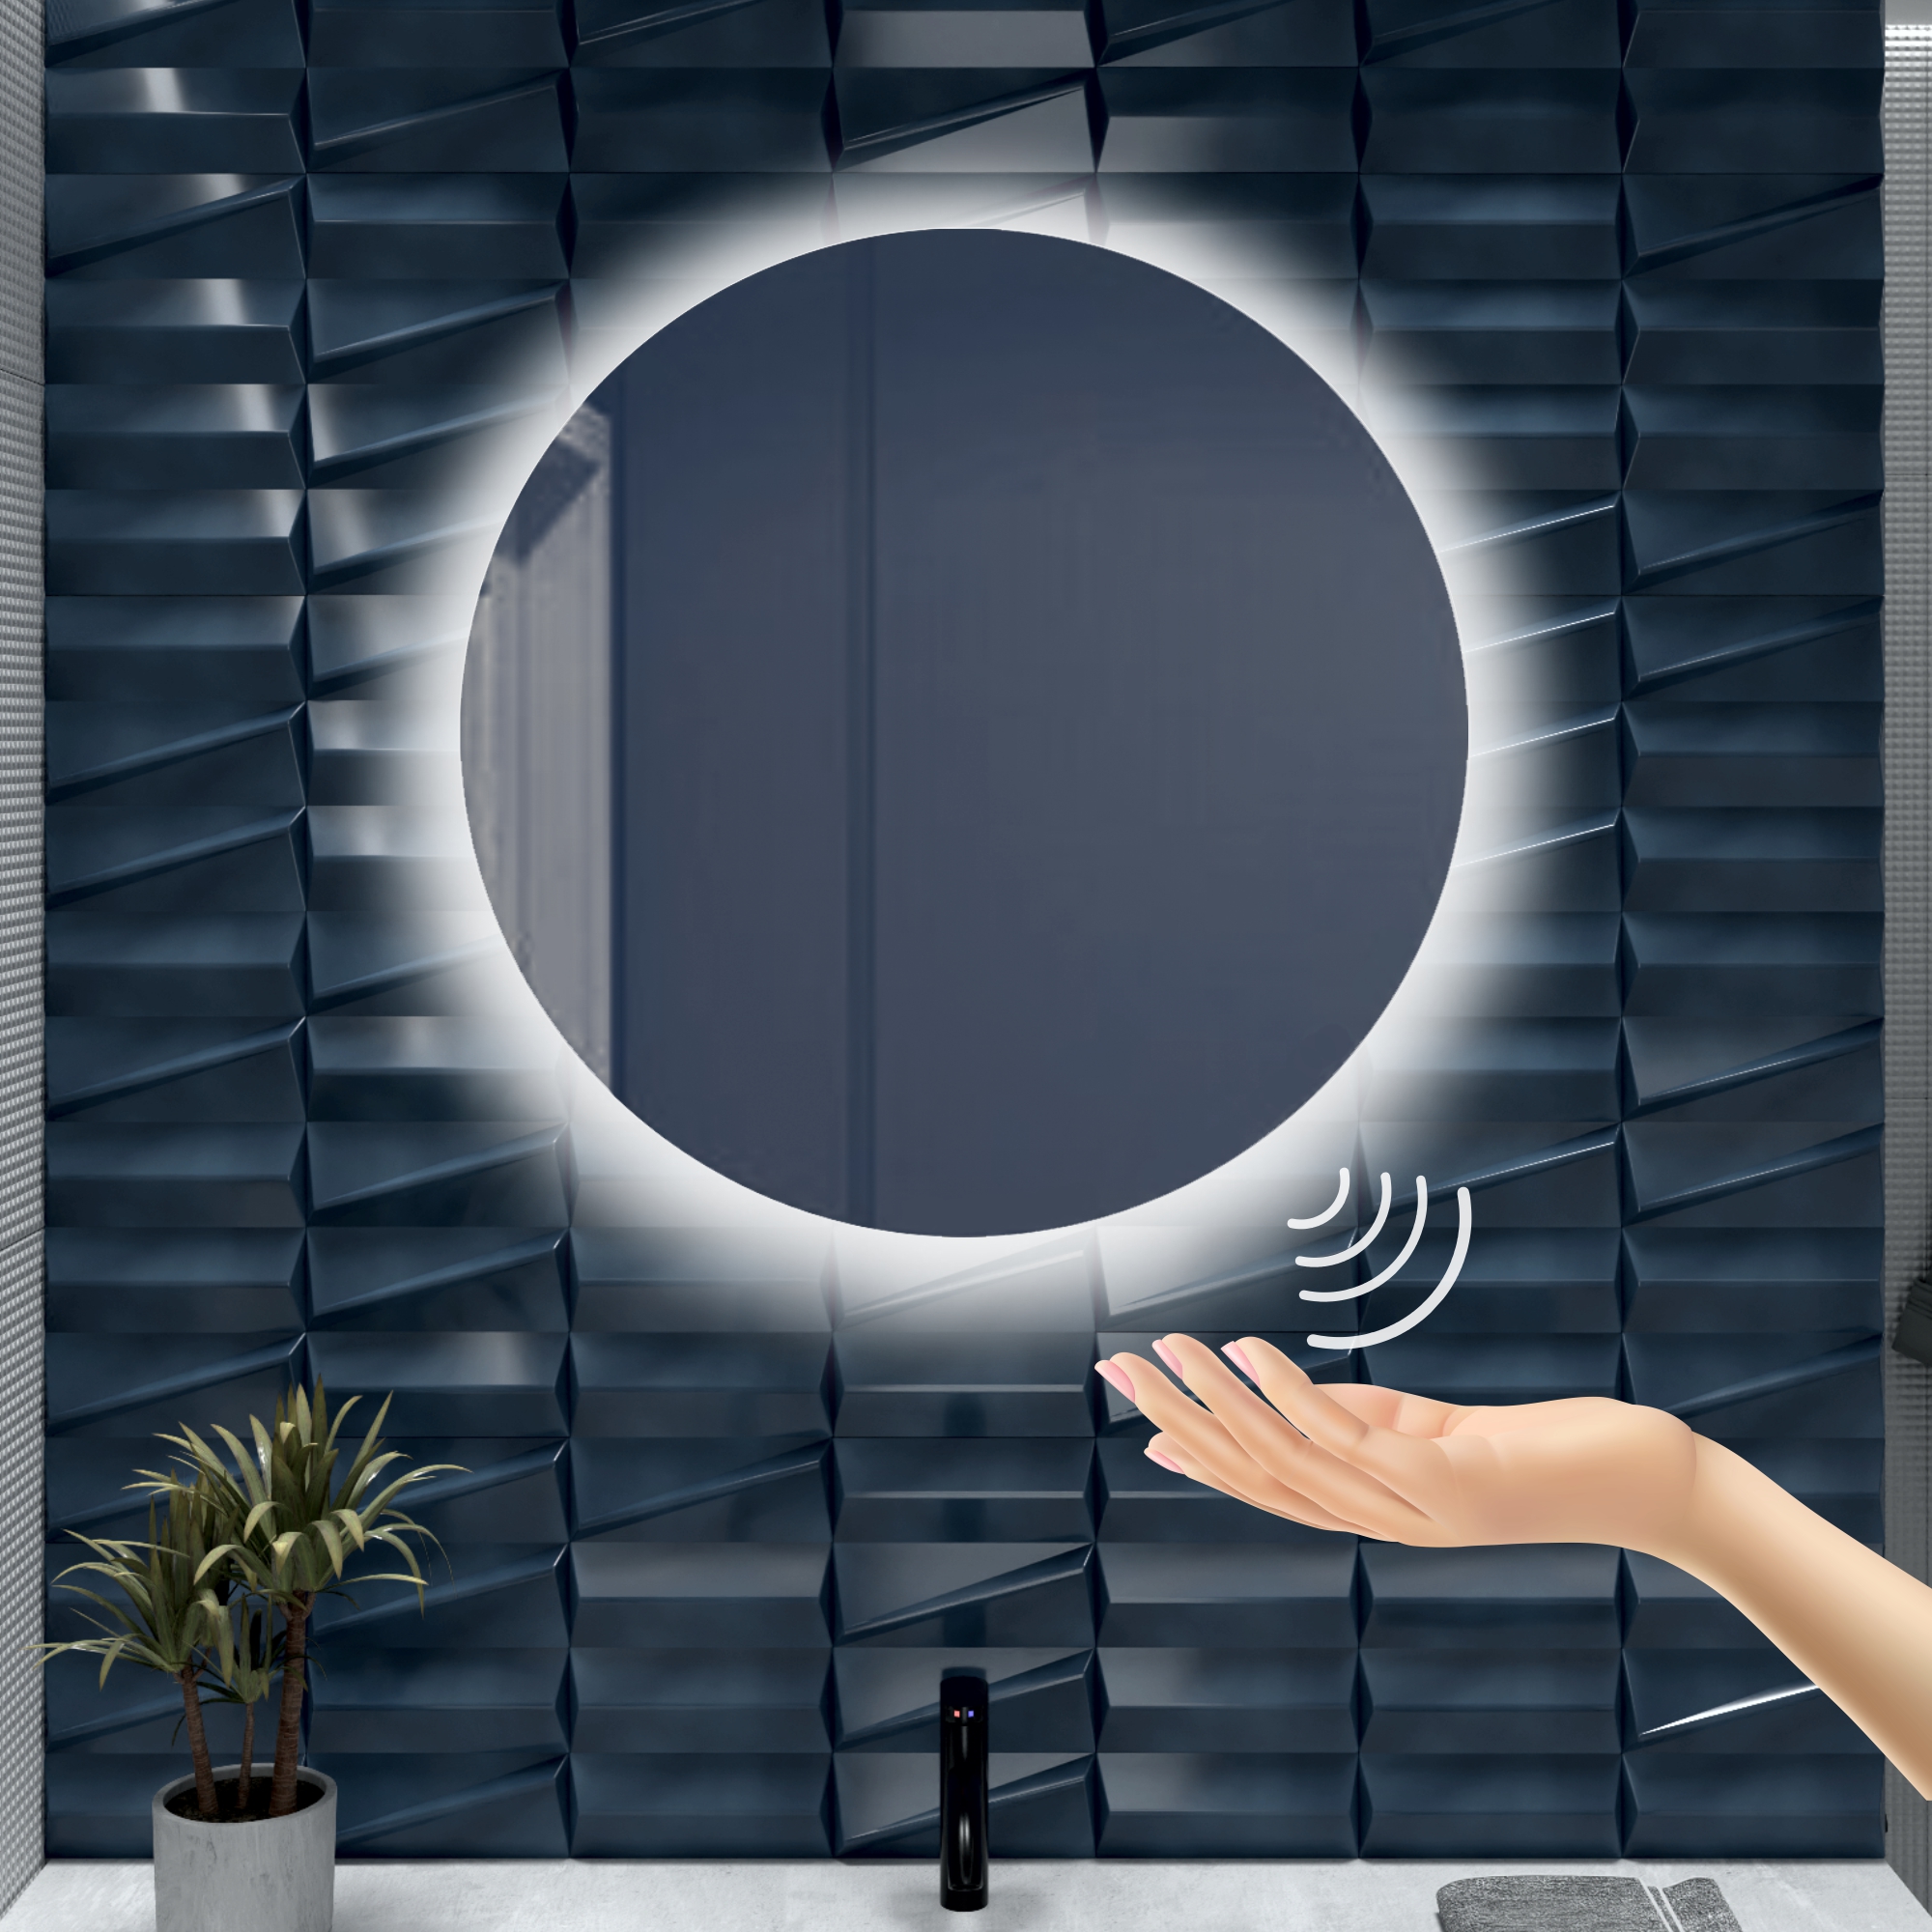 Зеркало для ванной Alfa Mirrors с холодной подсветкой 6500К круглое 80см, арт. Na-8Vzh зеркало для ванной alfa mirrors с дневной подсветкой 4200к круглое 60см арт na 6vzd